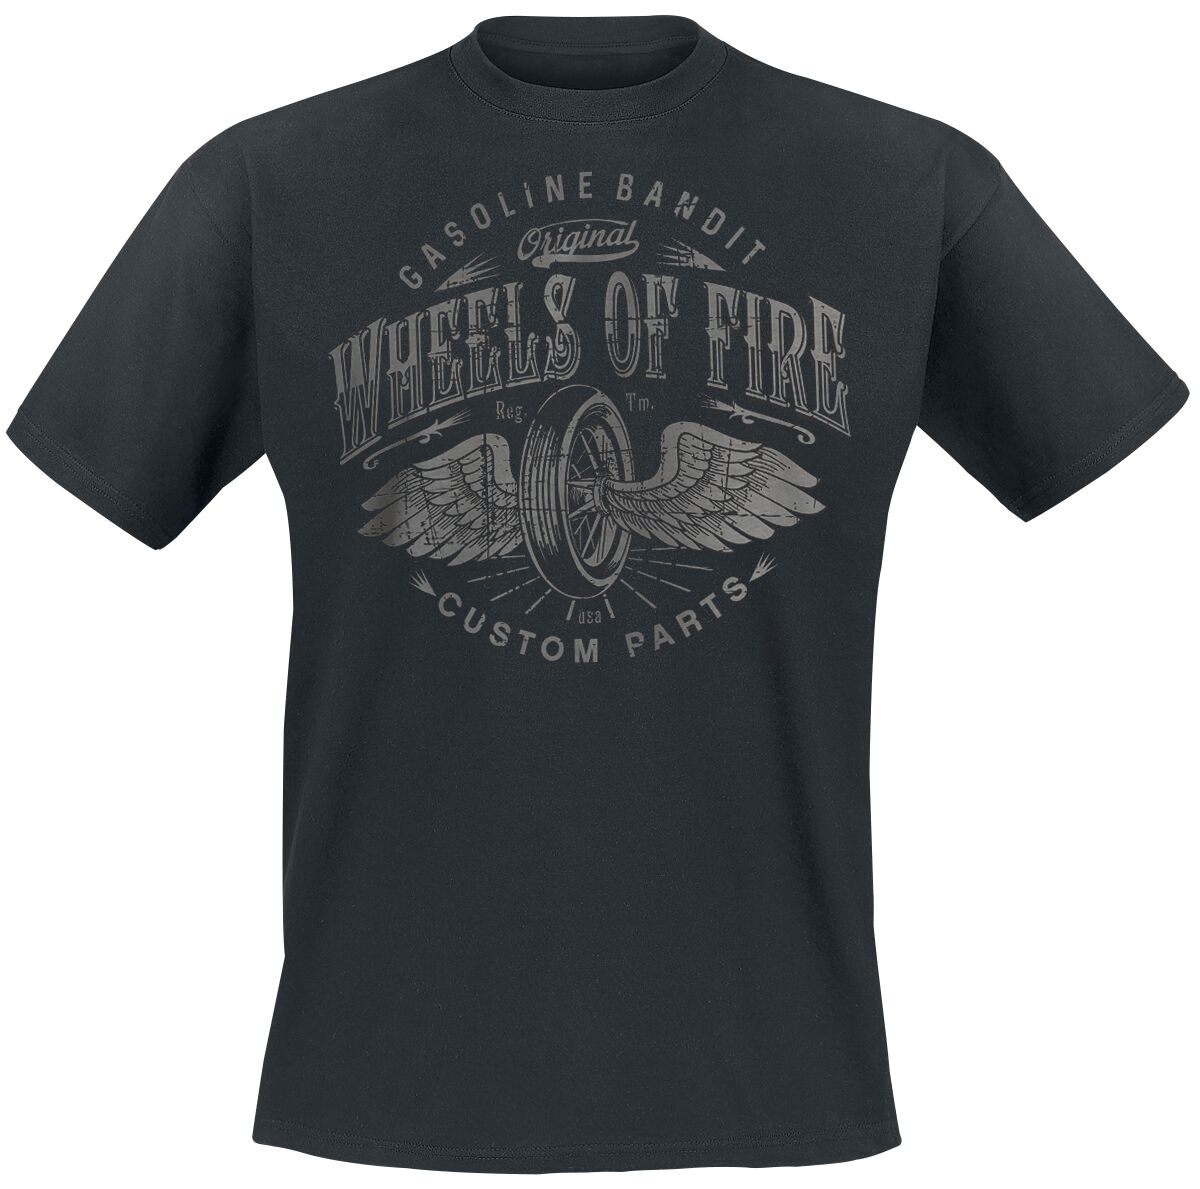 Gasoline Bandit - Rockabilly T-Shirt - Wheels Of Fire - S bis 4XL - für Männer - Größe 4XL - schwarz